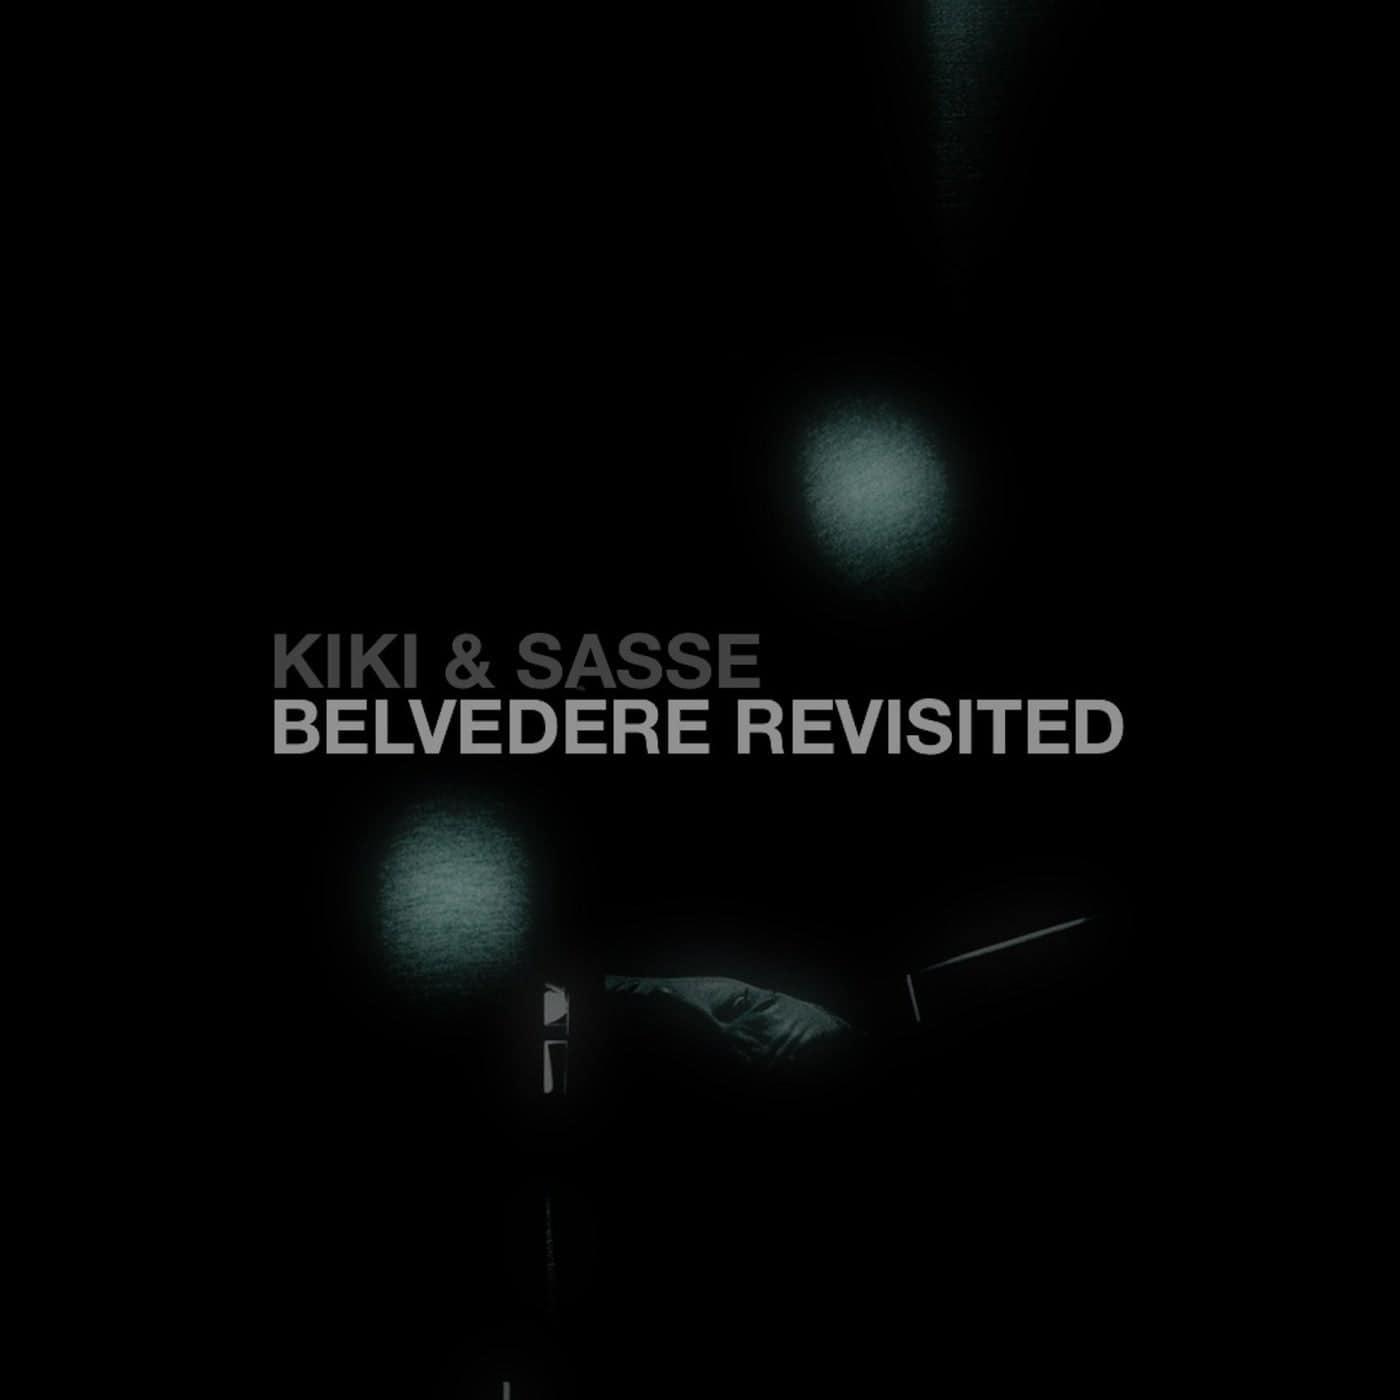 Download Kiki, Sasse - Belvedere Revisited on Electrobuzz